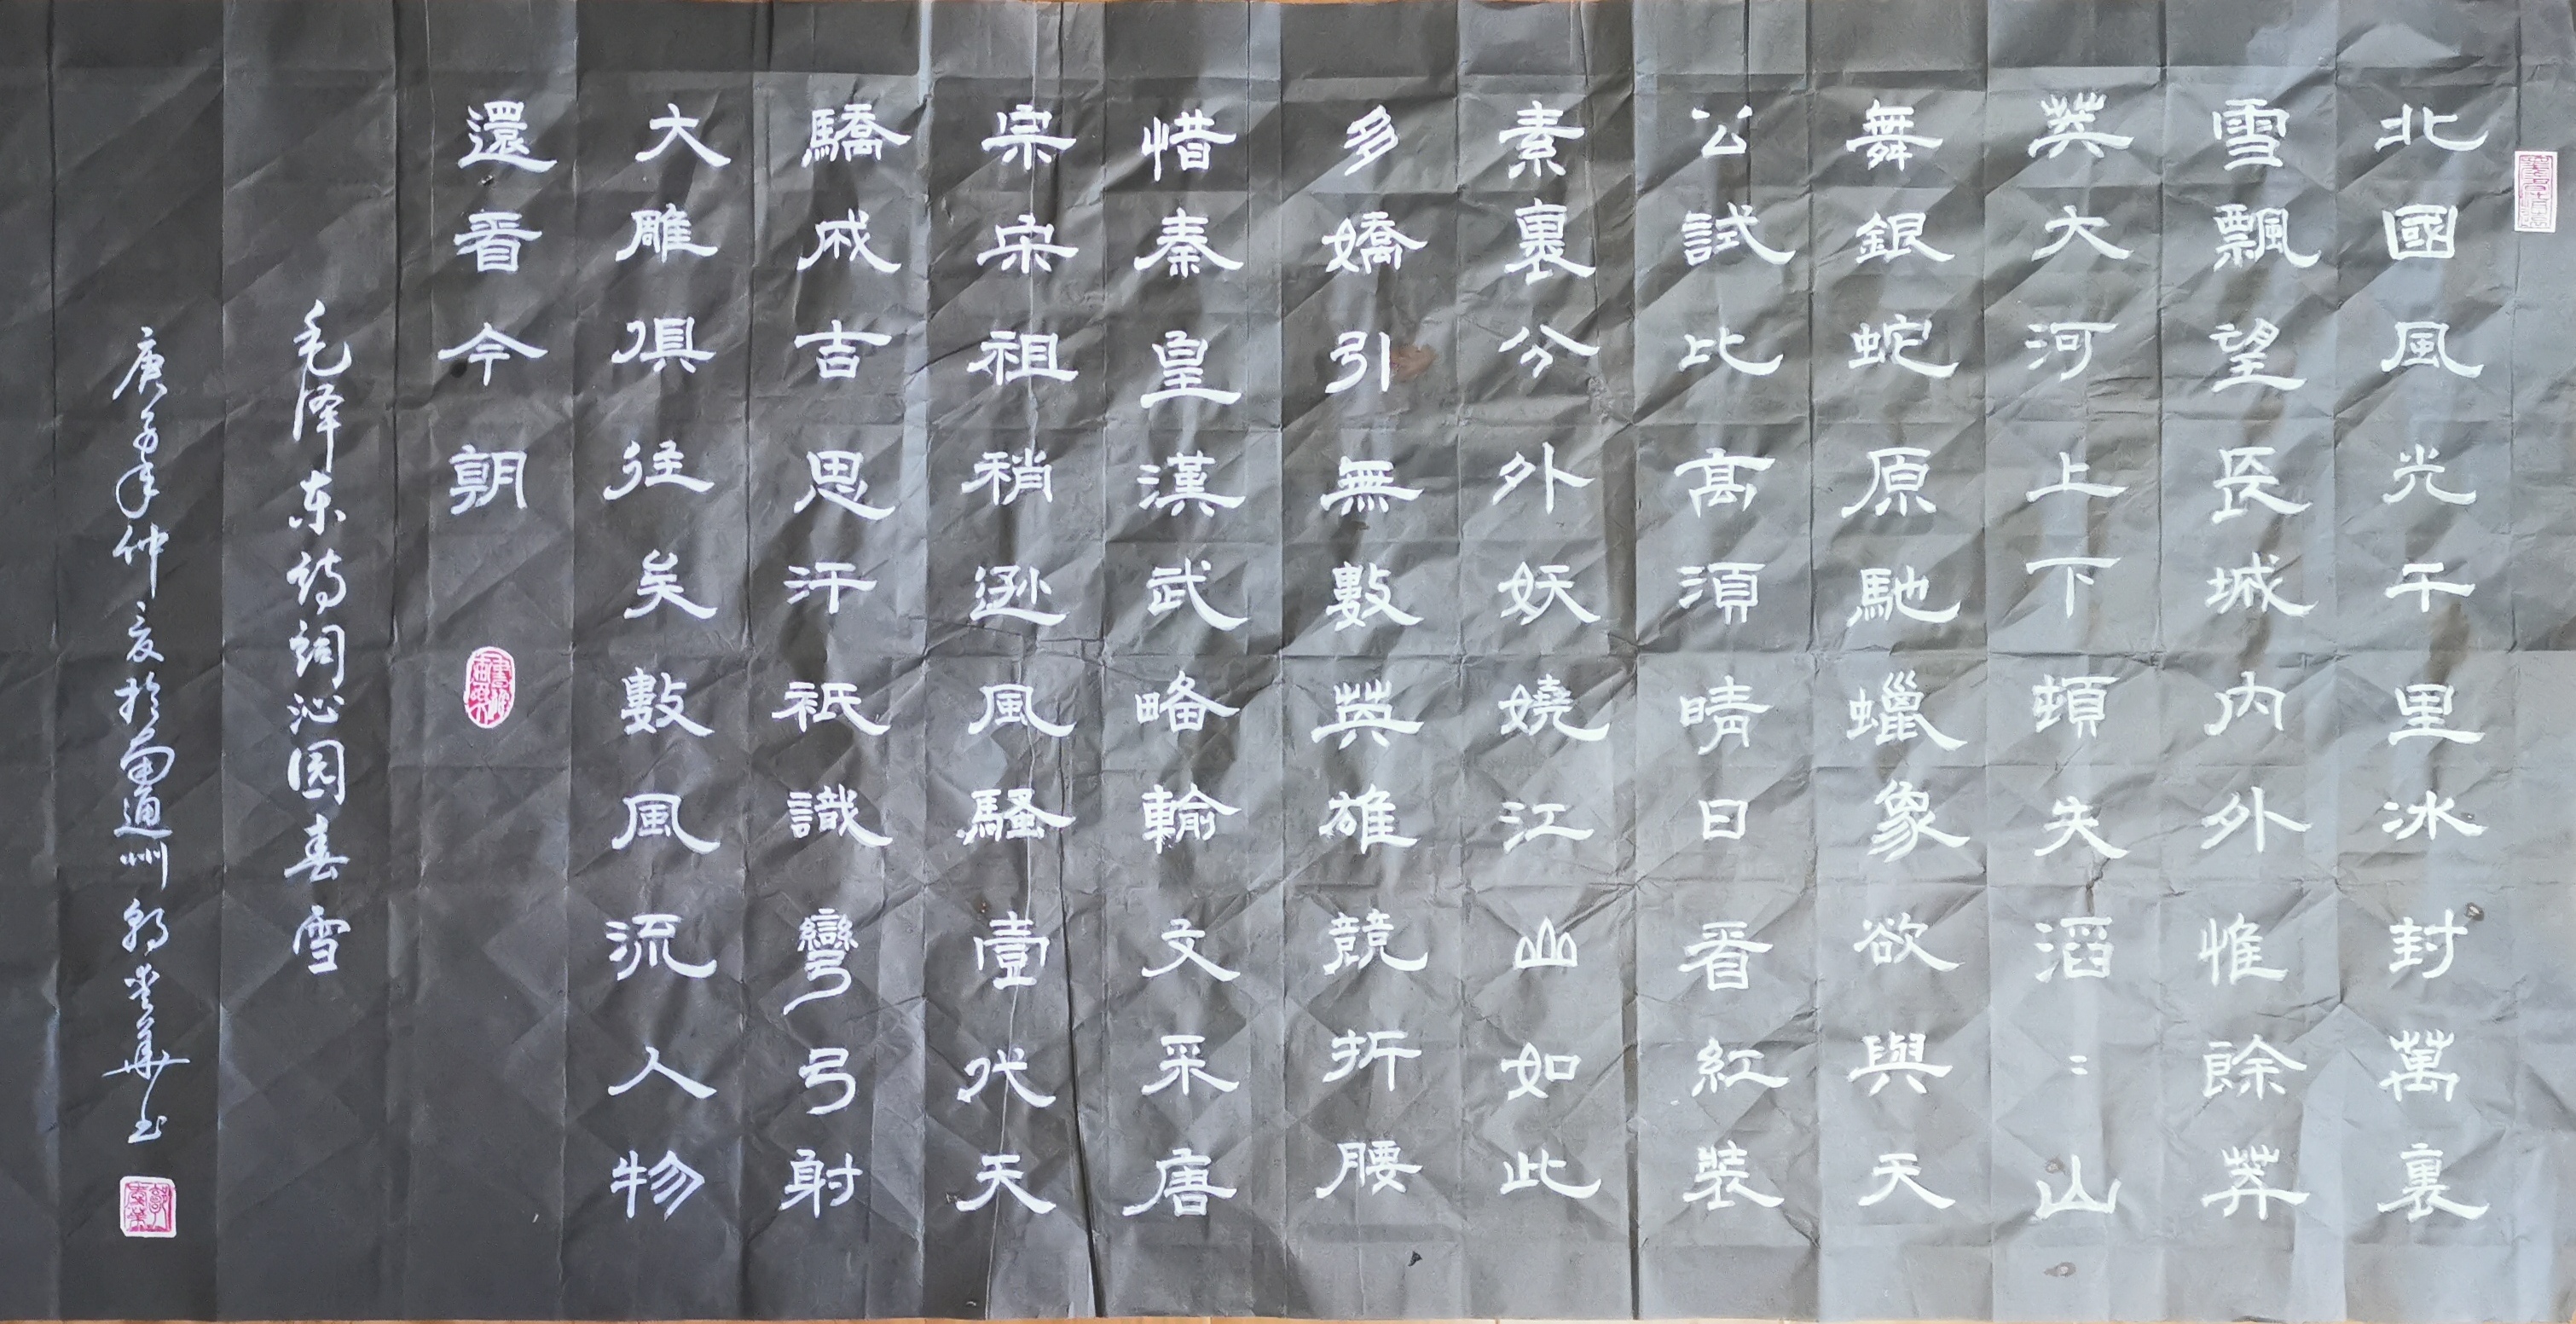 中国楹联学会中宣盛世文化艺术交流中心书画风采展示——郭爱华